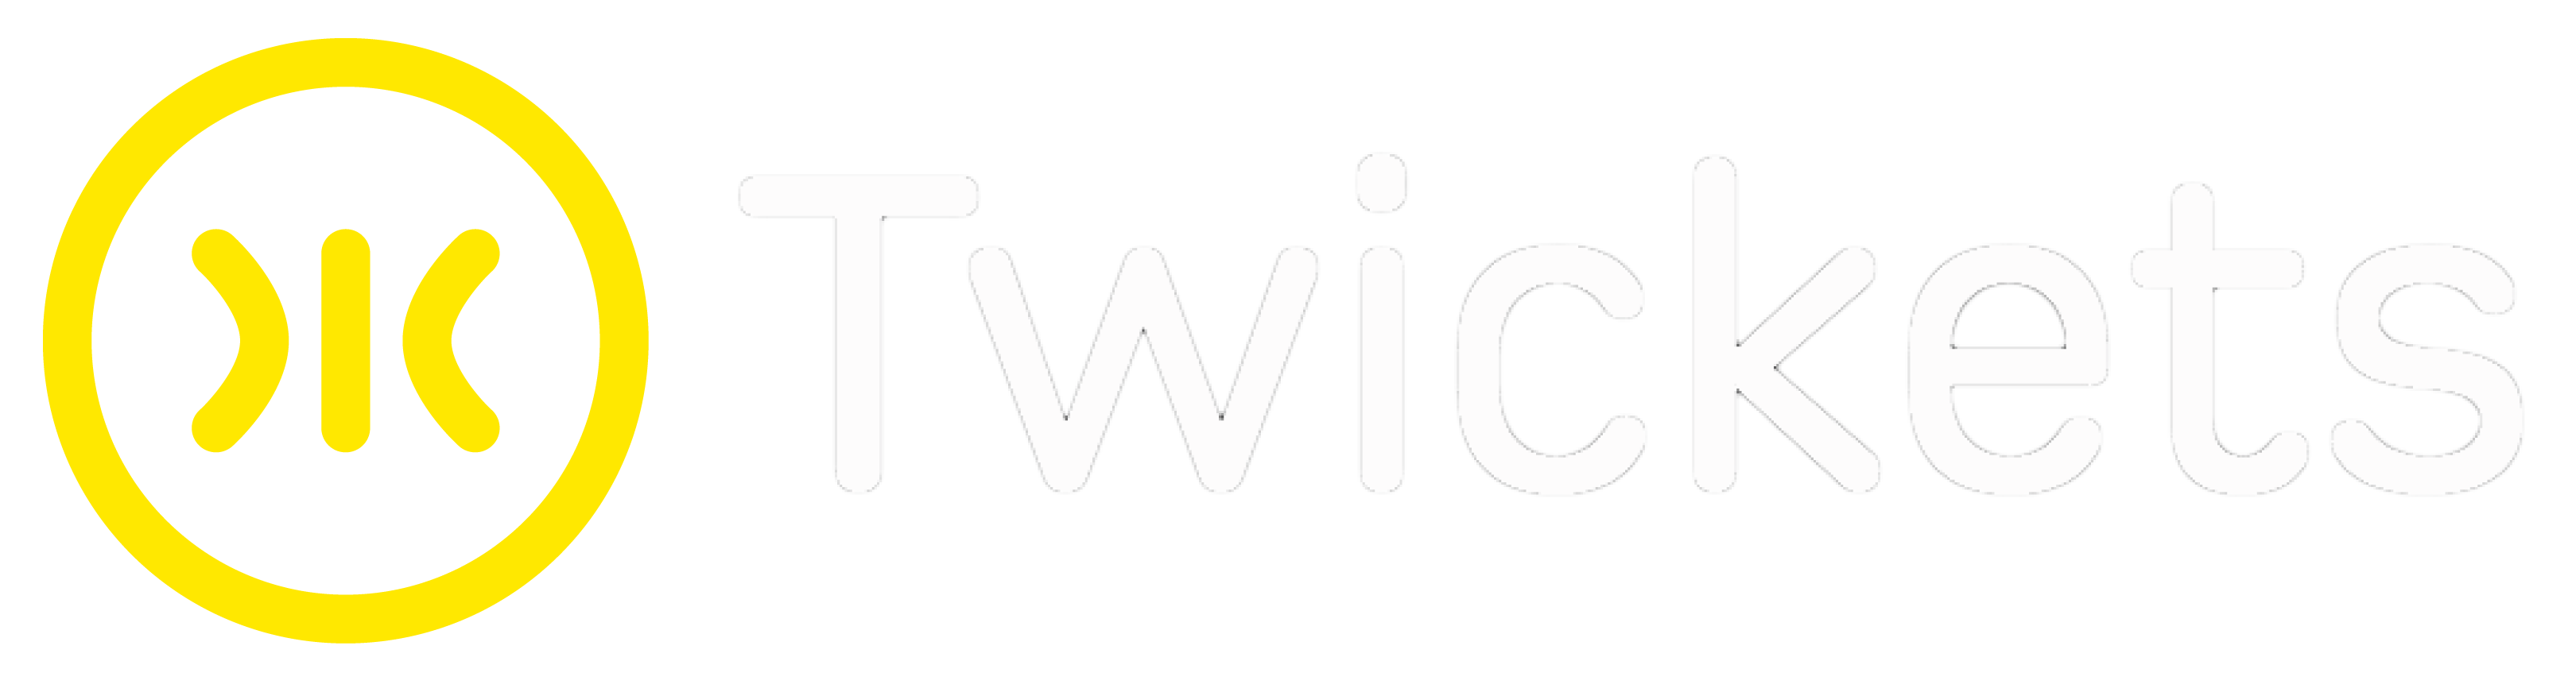 Twickets logo